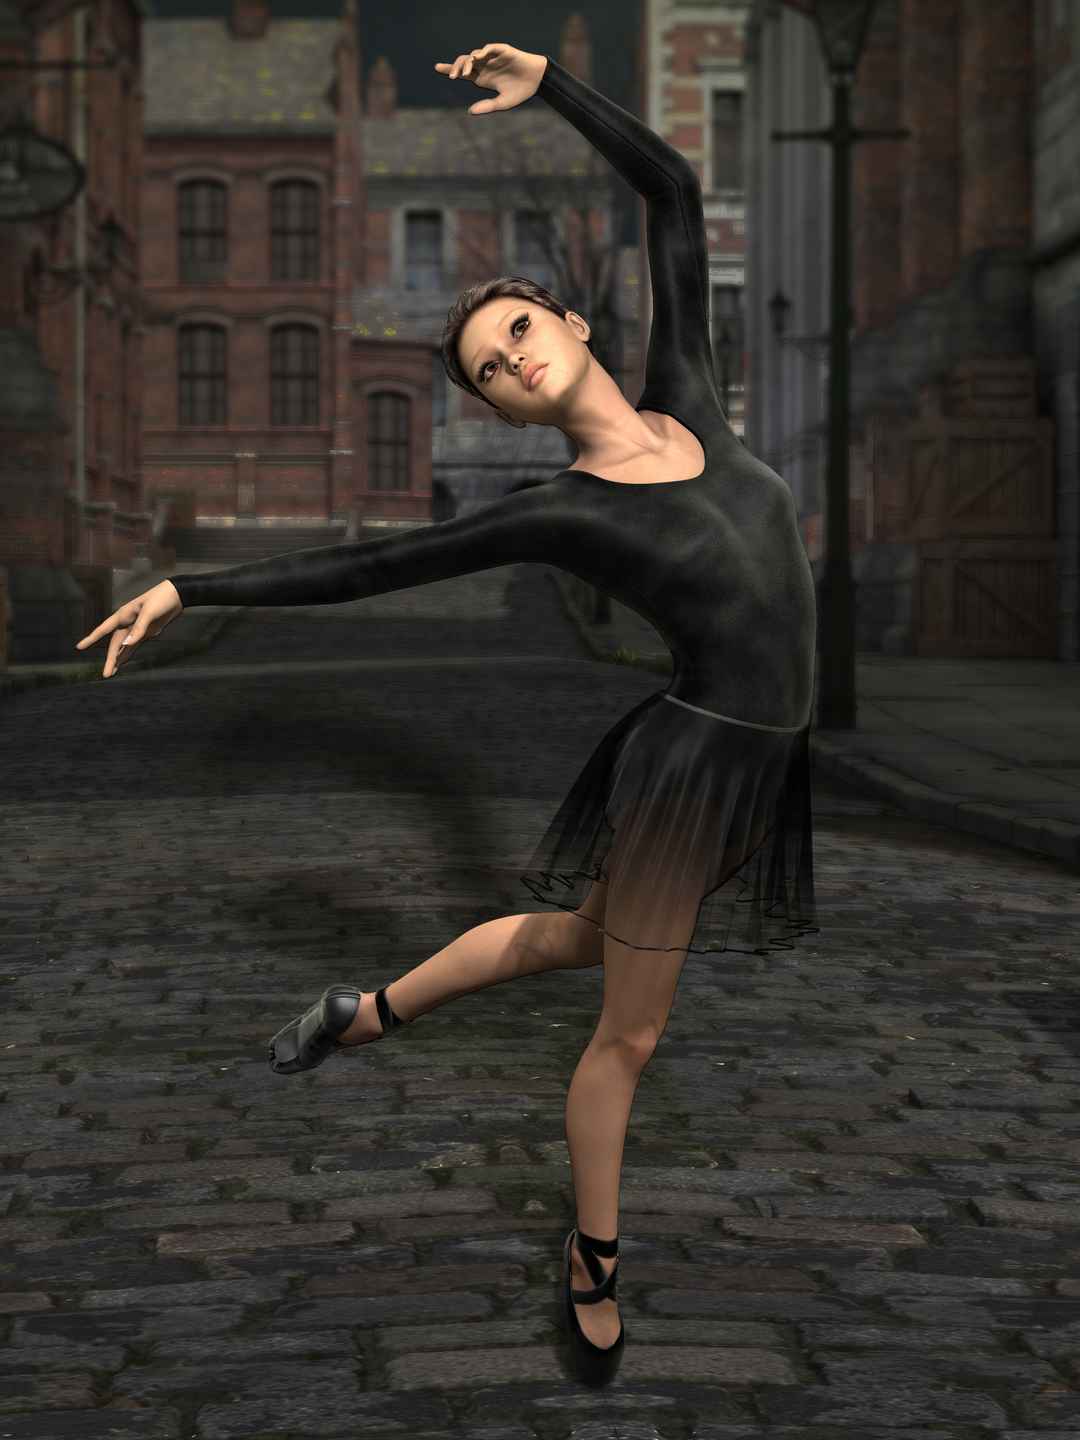 俄罗斯芭蕾舞艺术家来青少年宫进行舞蹈艺术交流活动 _德州新闻网